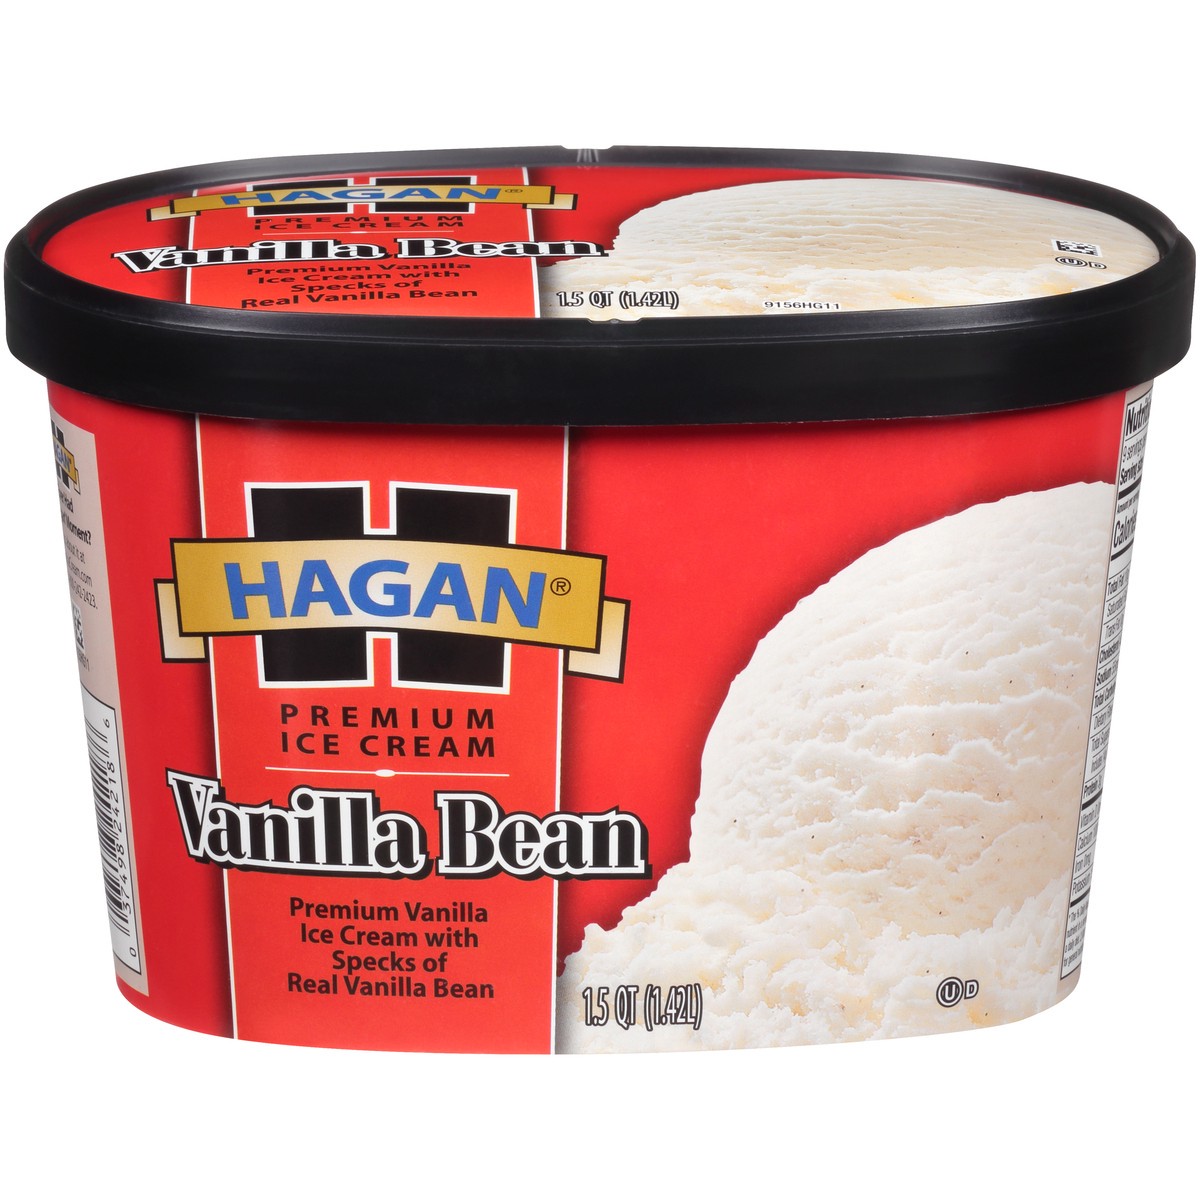 slide 1 of 10, Hagan Vanilla Bean Premium Ice Cream 1.5 qt. Tub, 1.42 liter